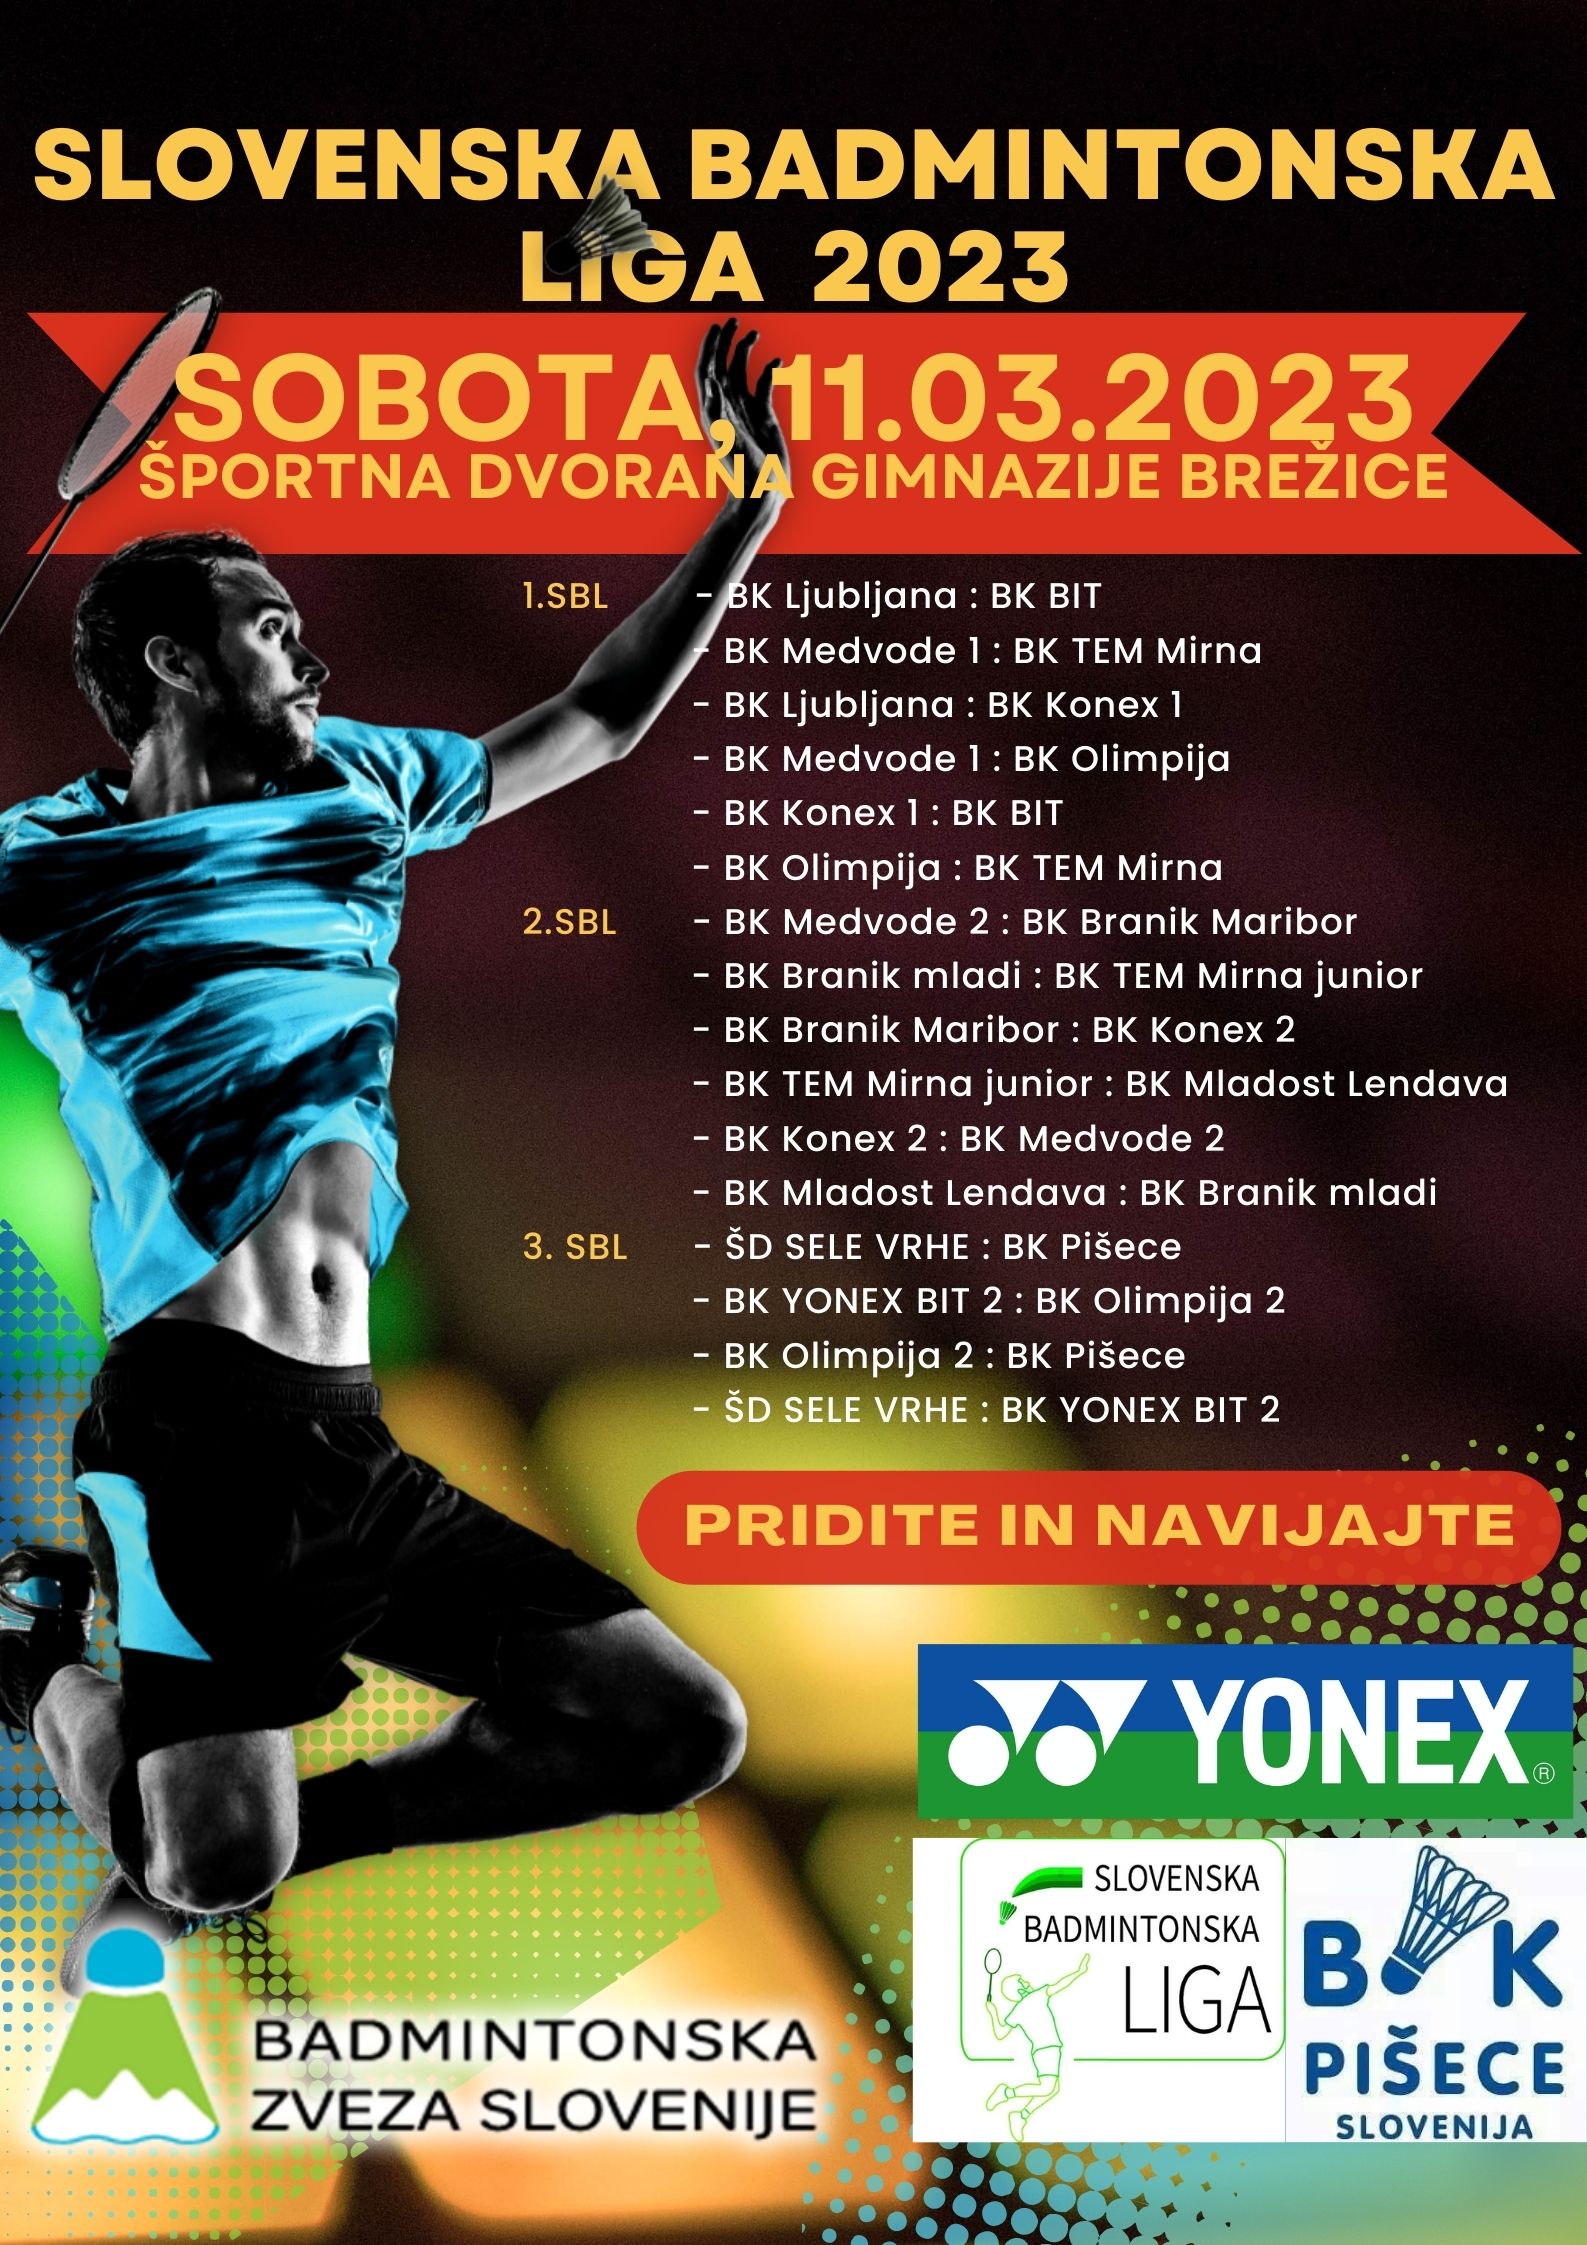 Slovenska badmintonska liga 2023